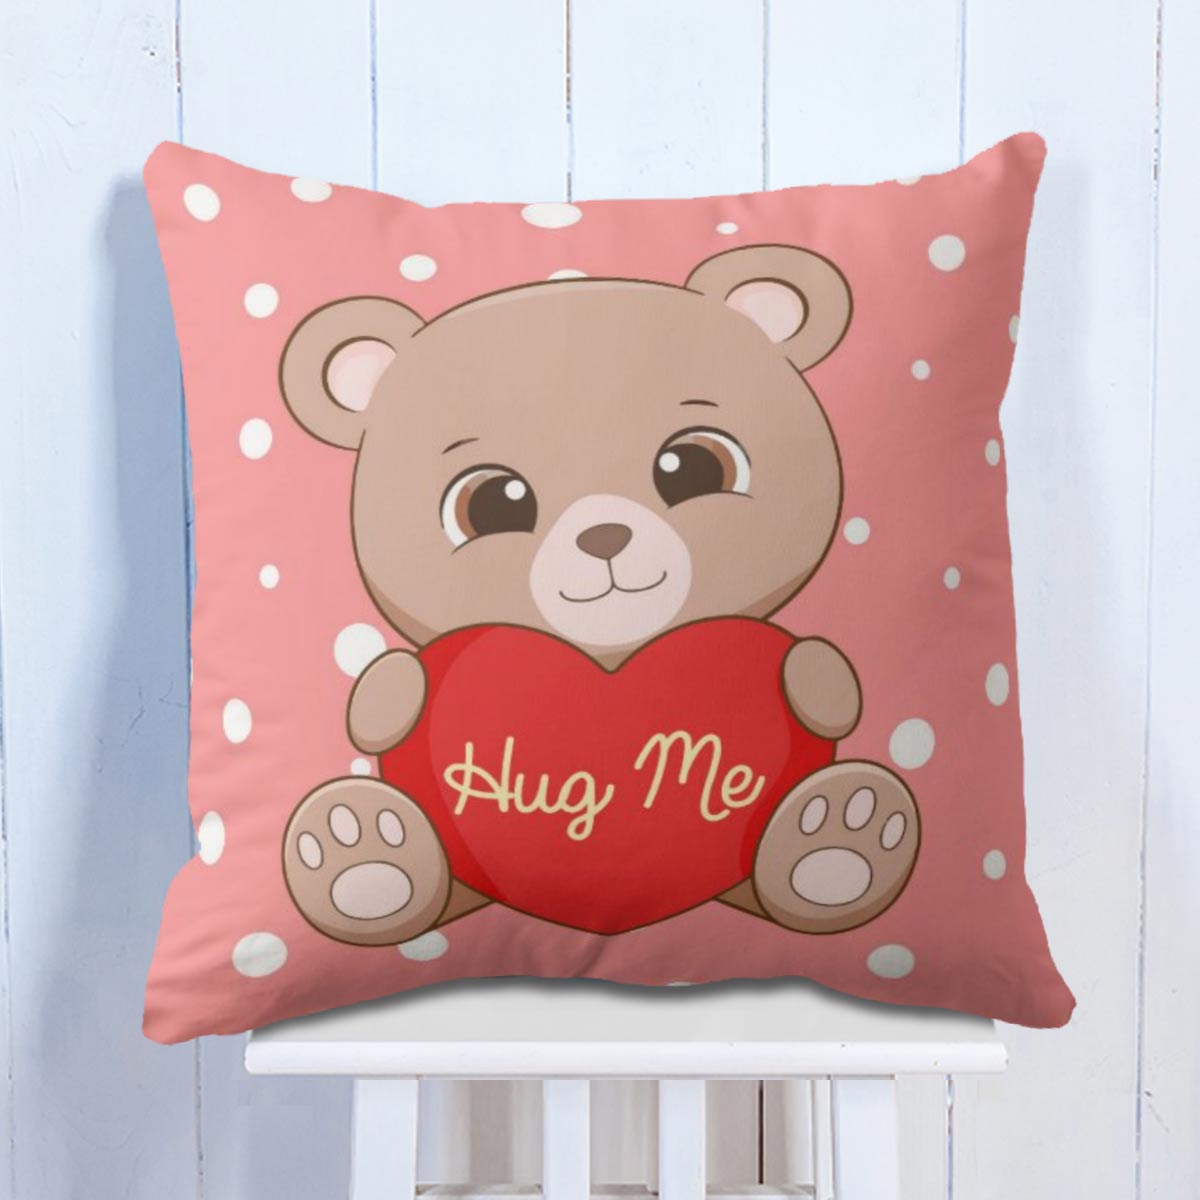 Hug Me Cushion